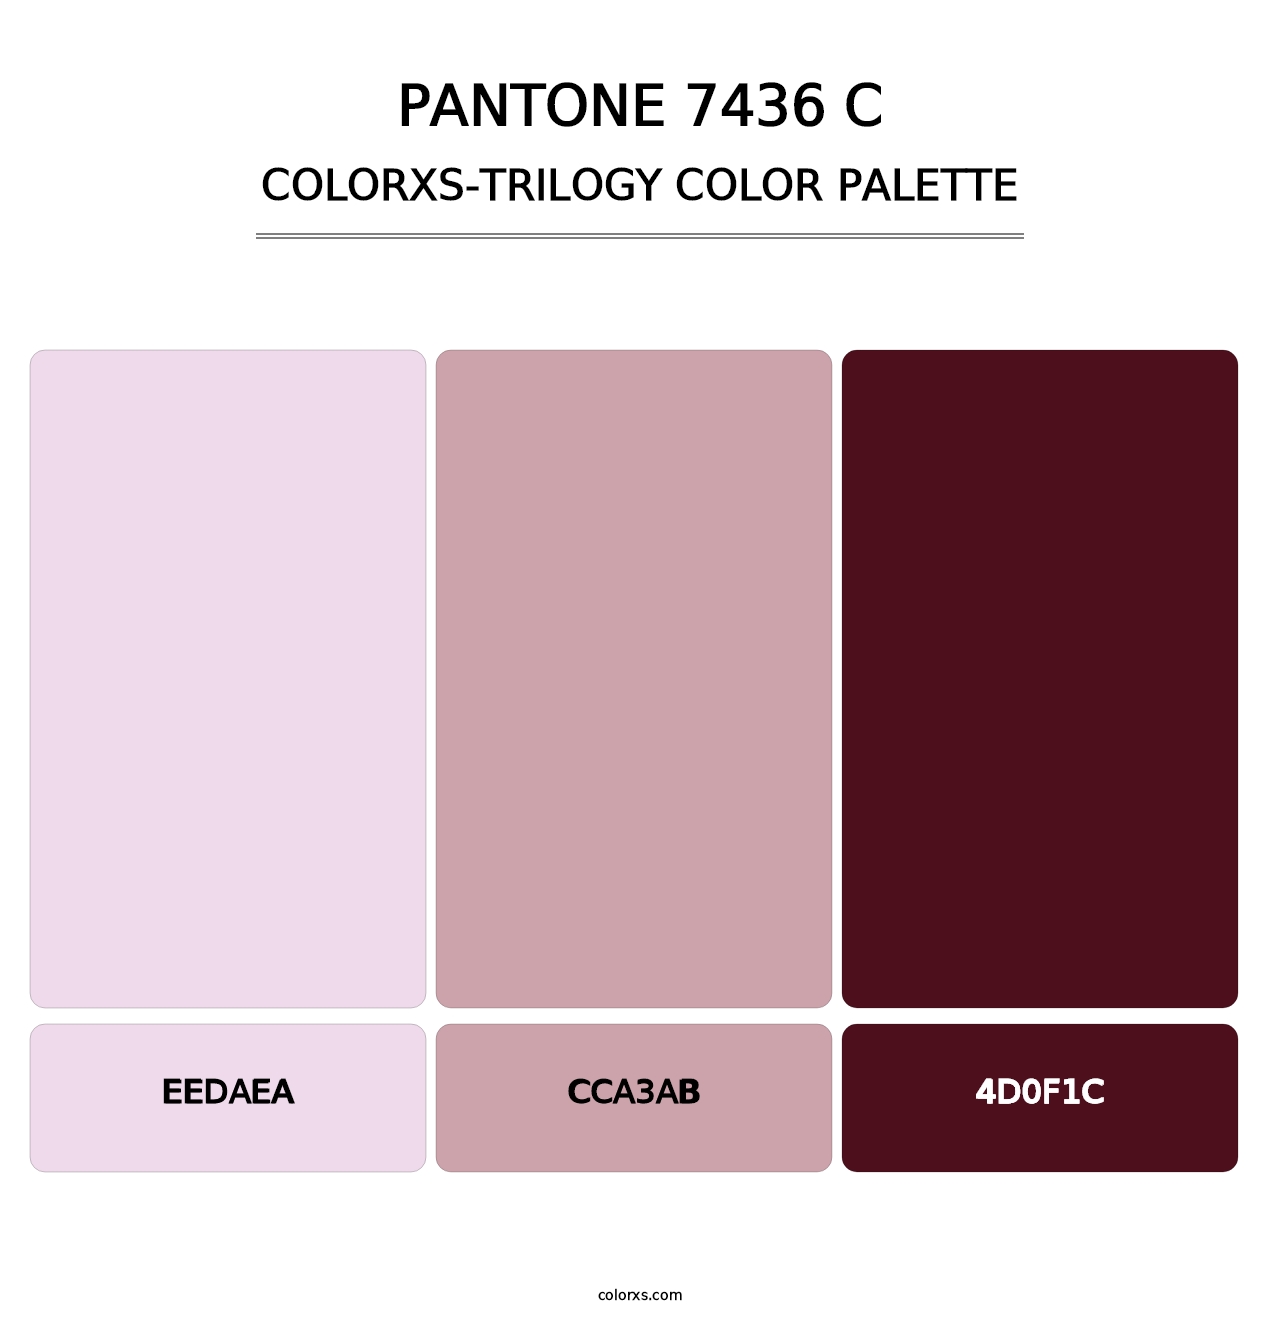 PANTONE 7436 C - Colorxs Trilogy Palette